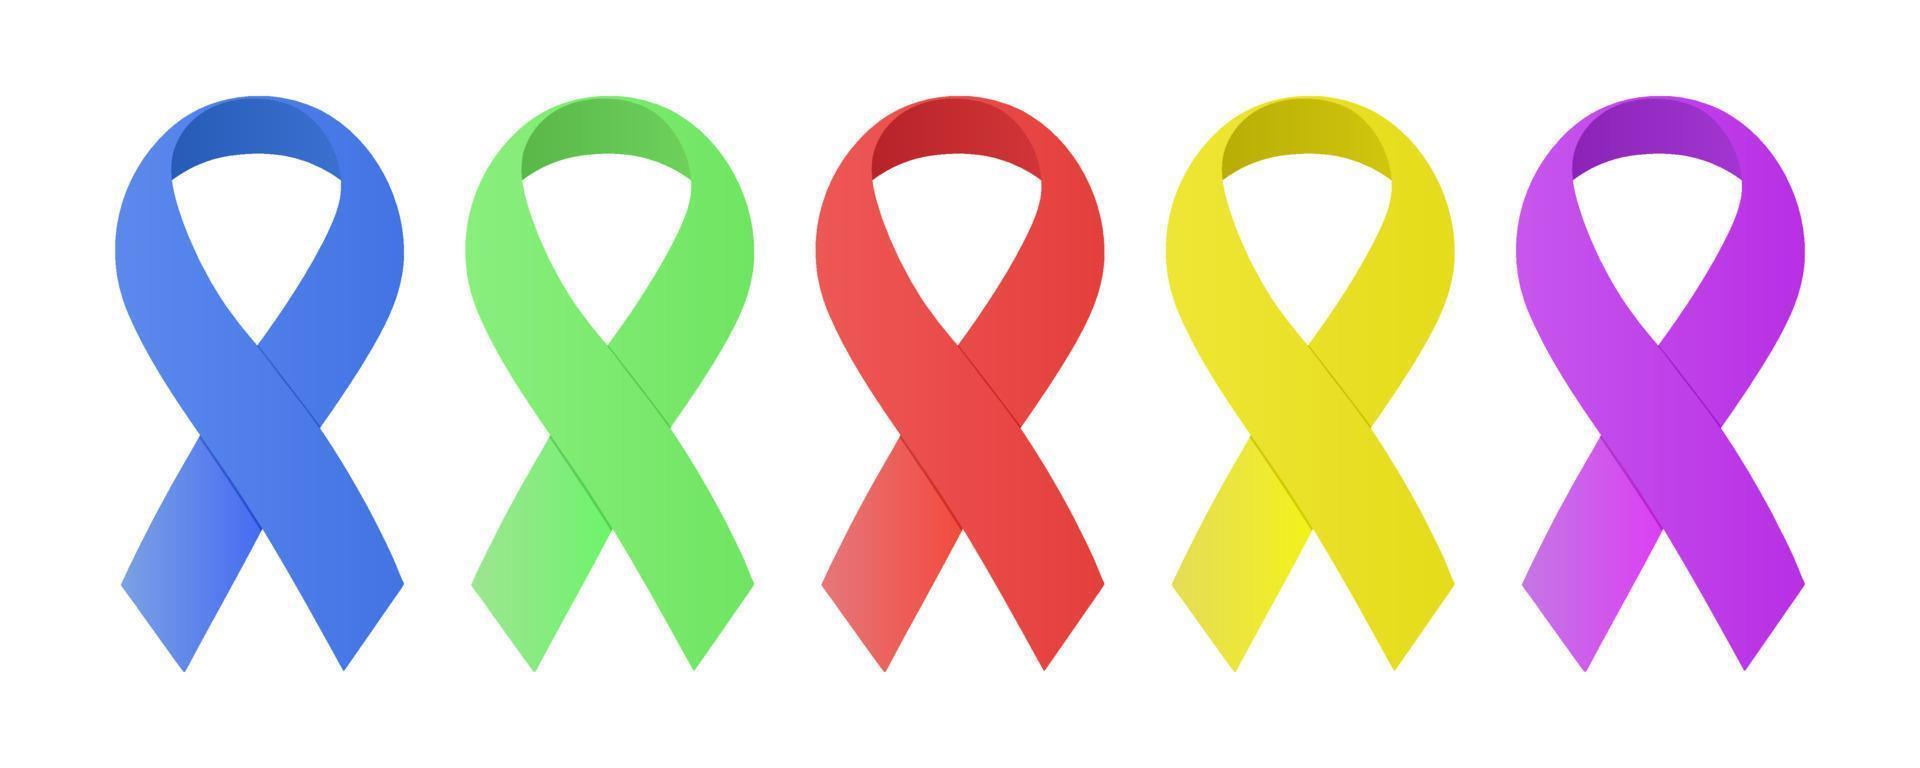 ensemble de rubans de sensibilisation de différentes couleurs, signe de soutien aux personnes atteintes de cancer, de diabète, d'autisme, de sida, de vih, d'autres problèmes de santé mentale et corporelle. vecteur